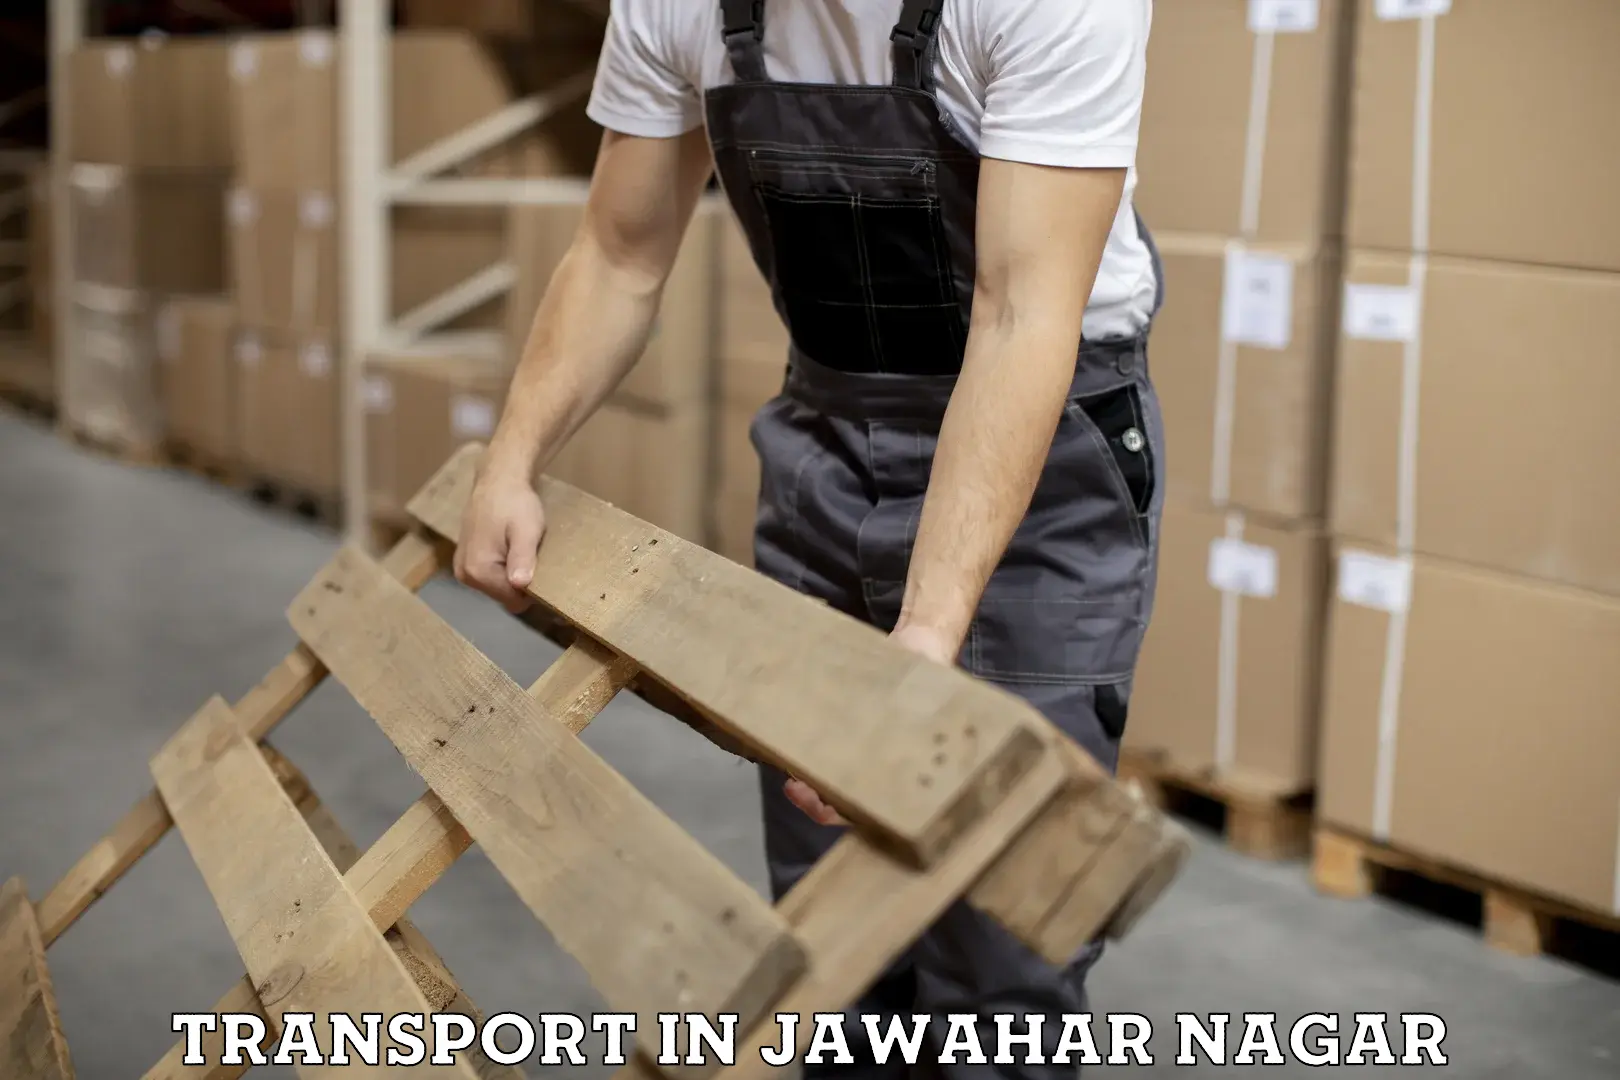 Daily transport service in Jawahar Nagar